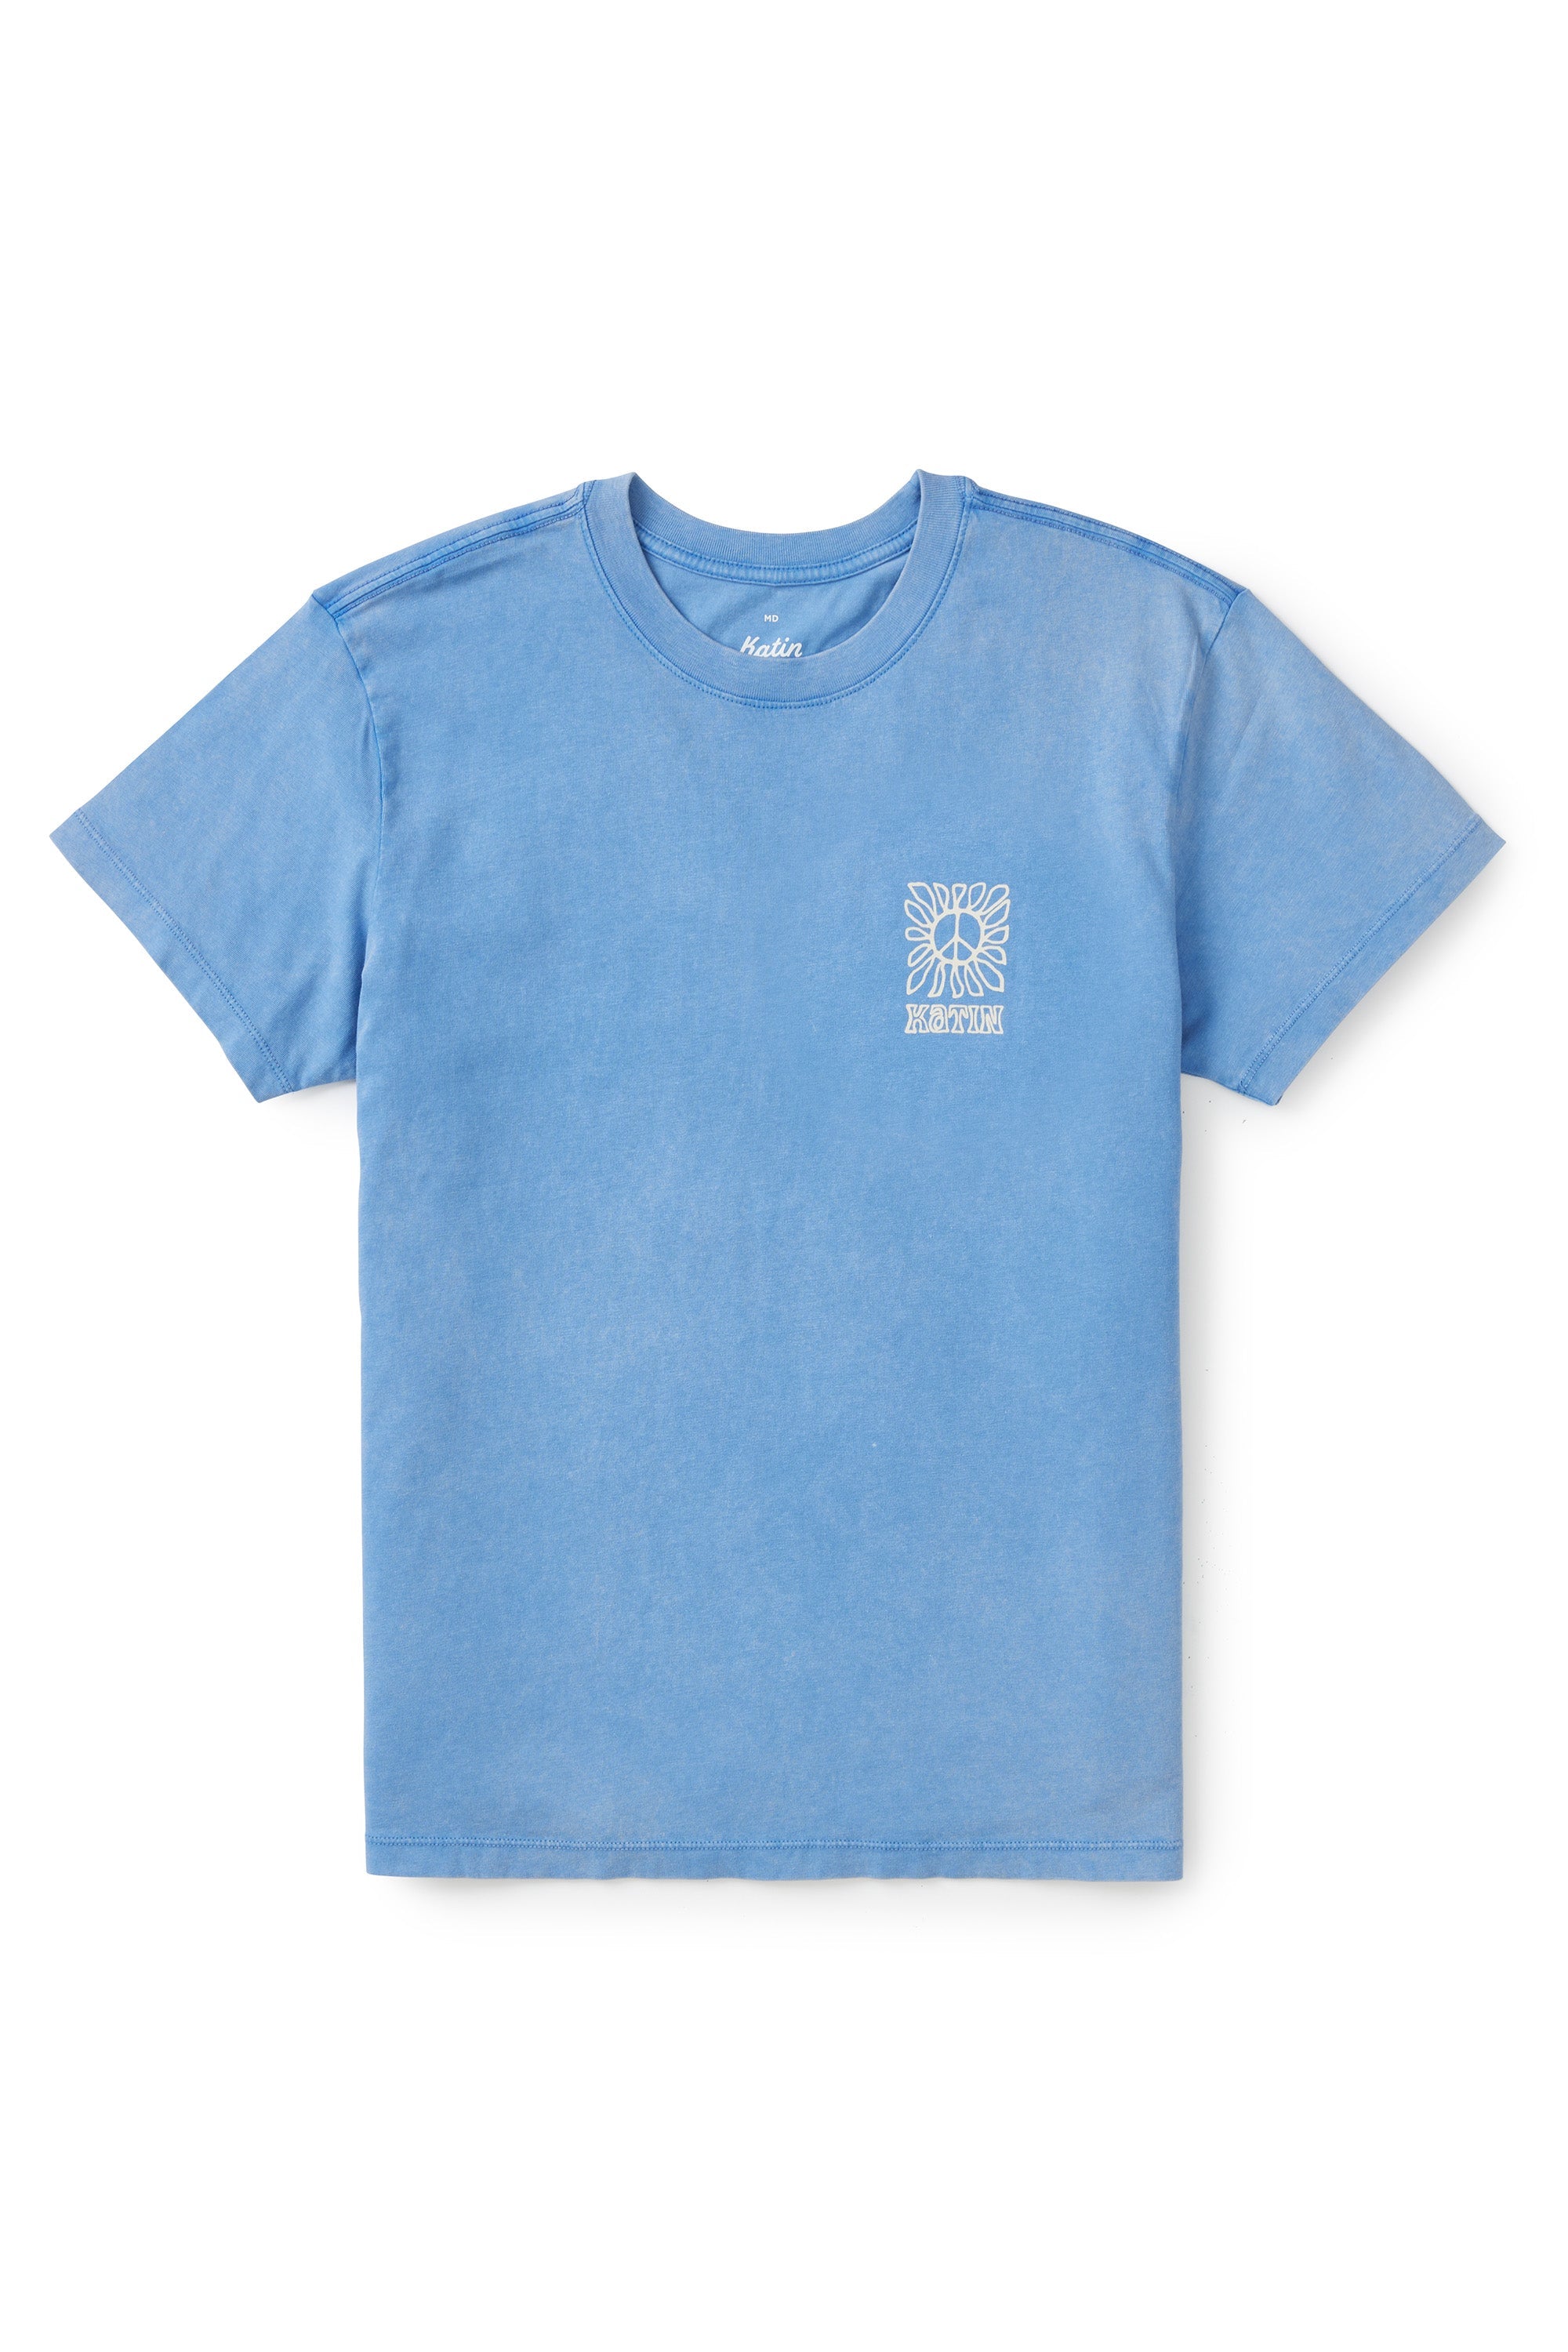 T-shirt Communal | Katin USA - Enfant